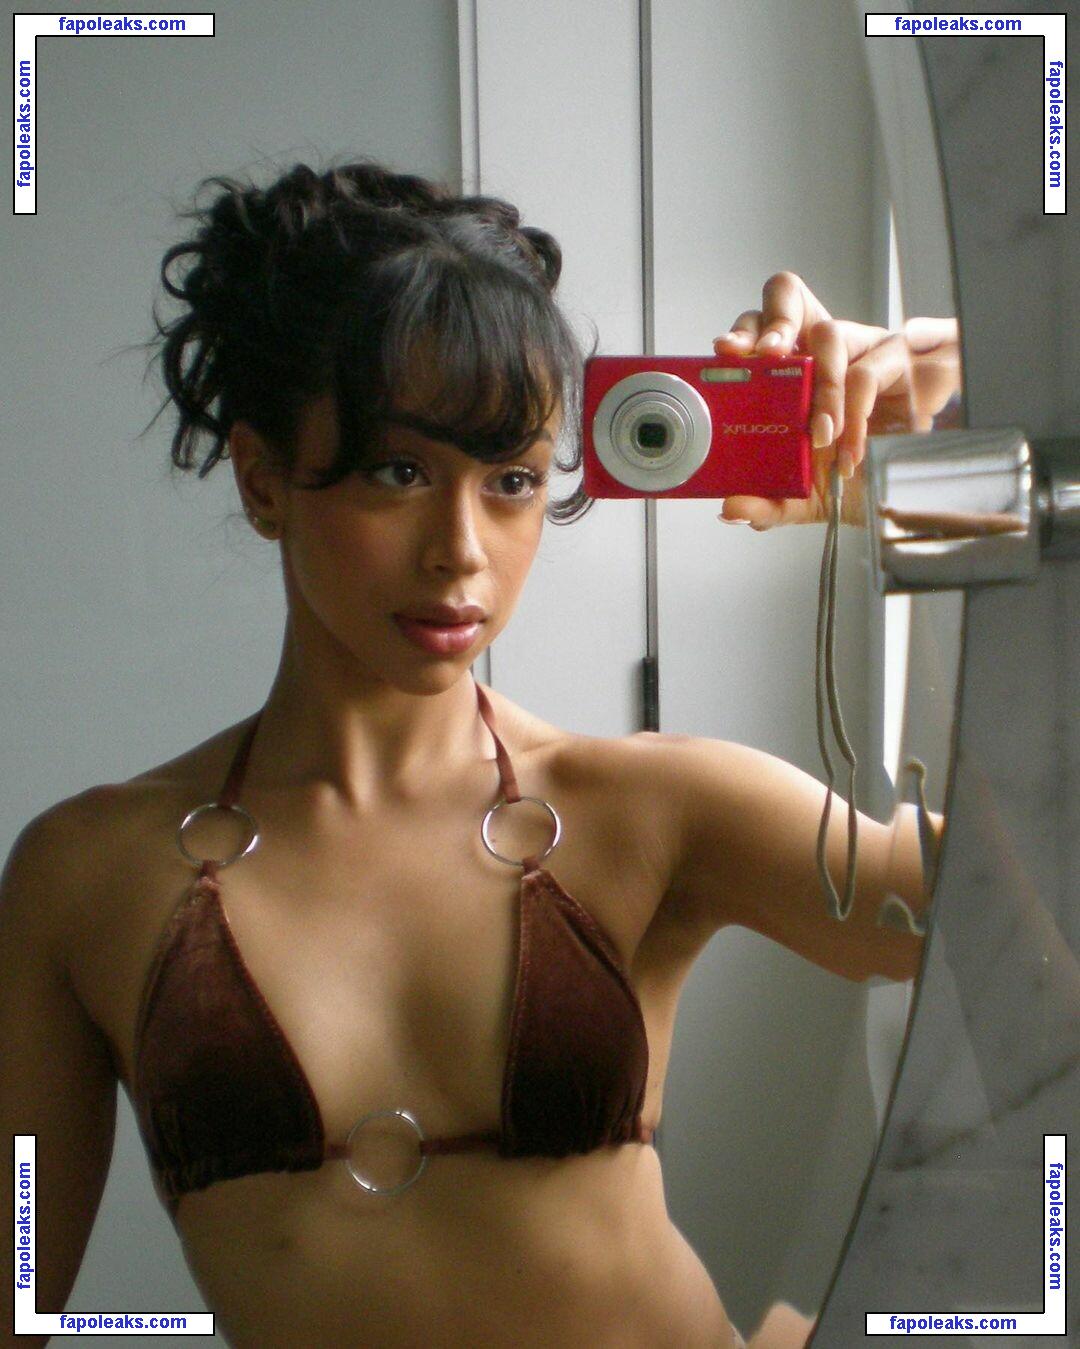 Liza Koshy / lizakoshy nude photo #0128 from OnlyFans